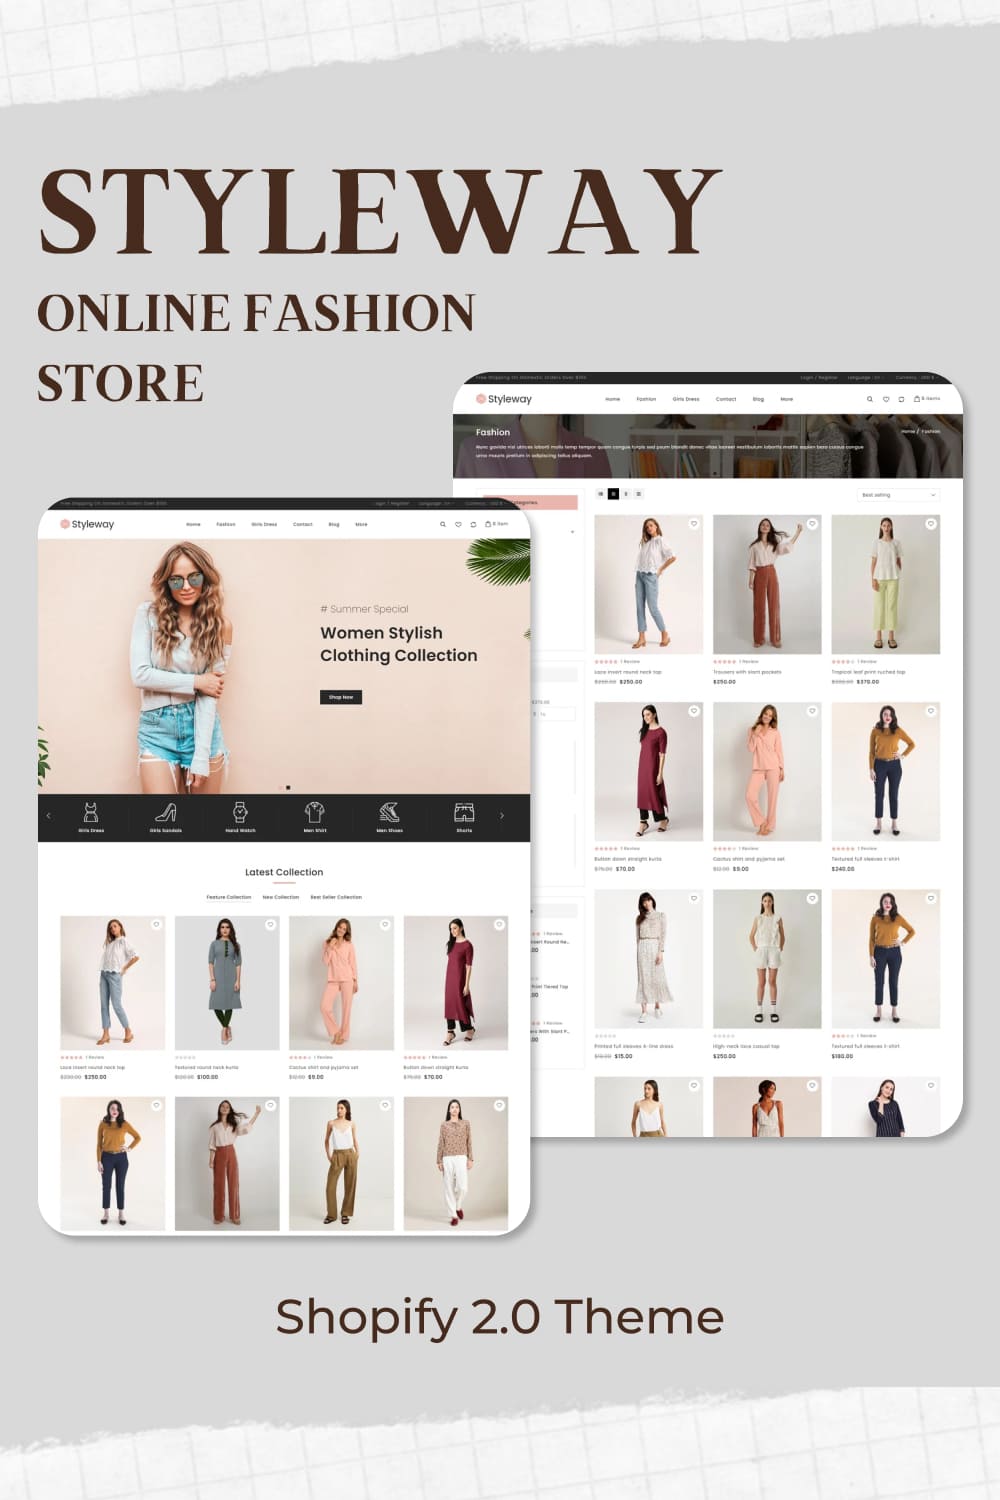 Styleway Online Fashion Store Shopify 2.0 Theme - Pinterest.